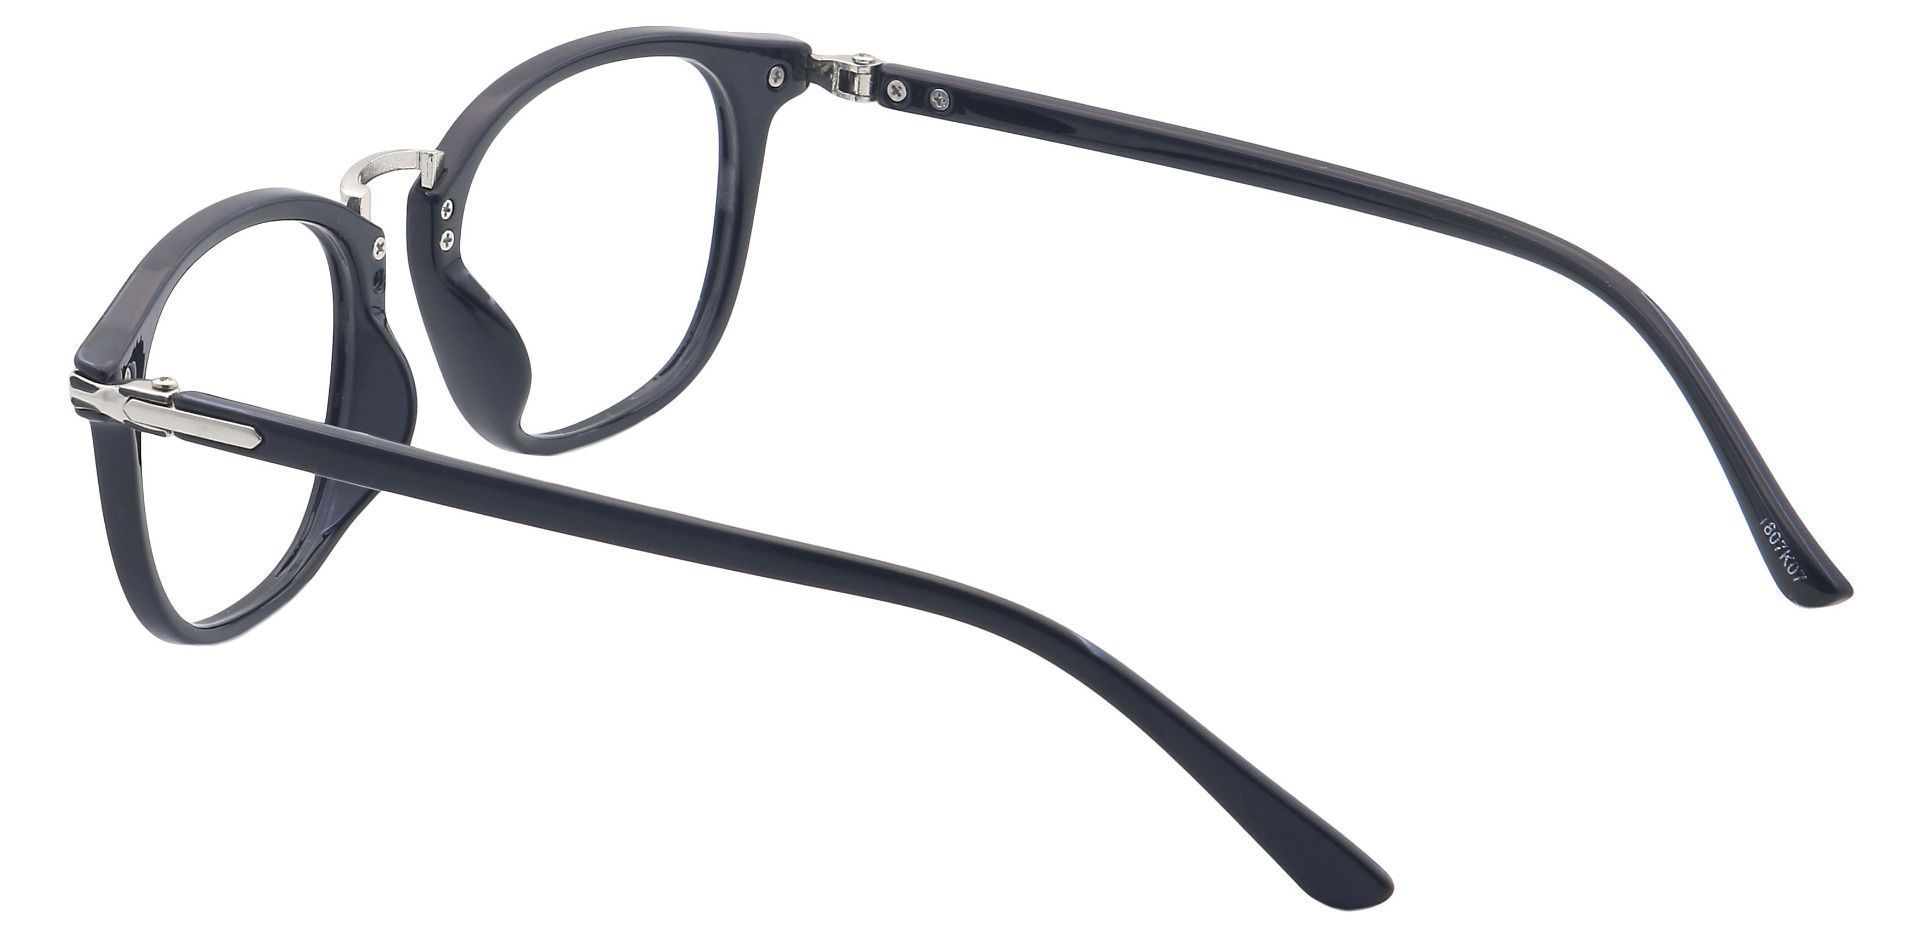 Aurora Square Progressive Glasses - Black